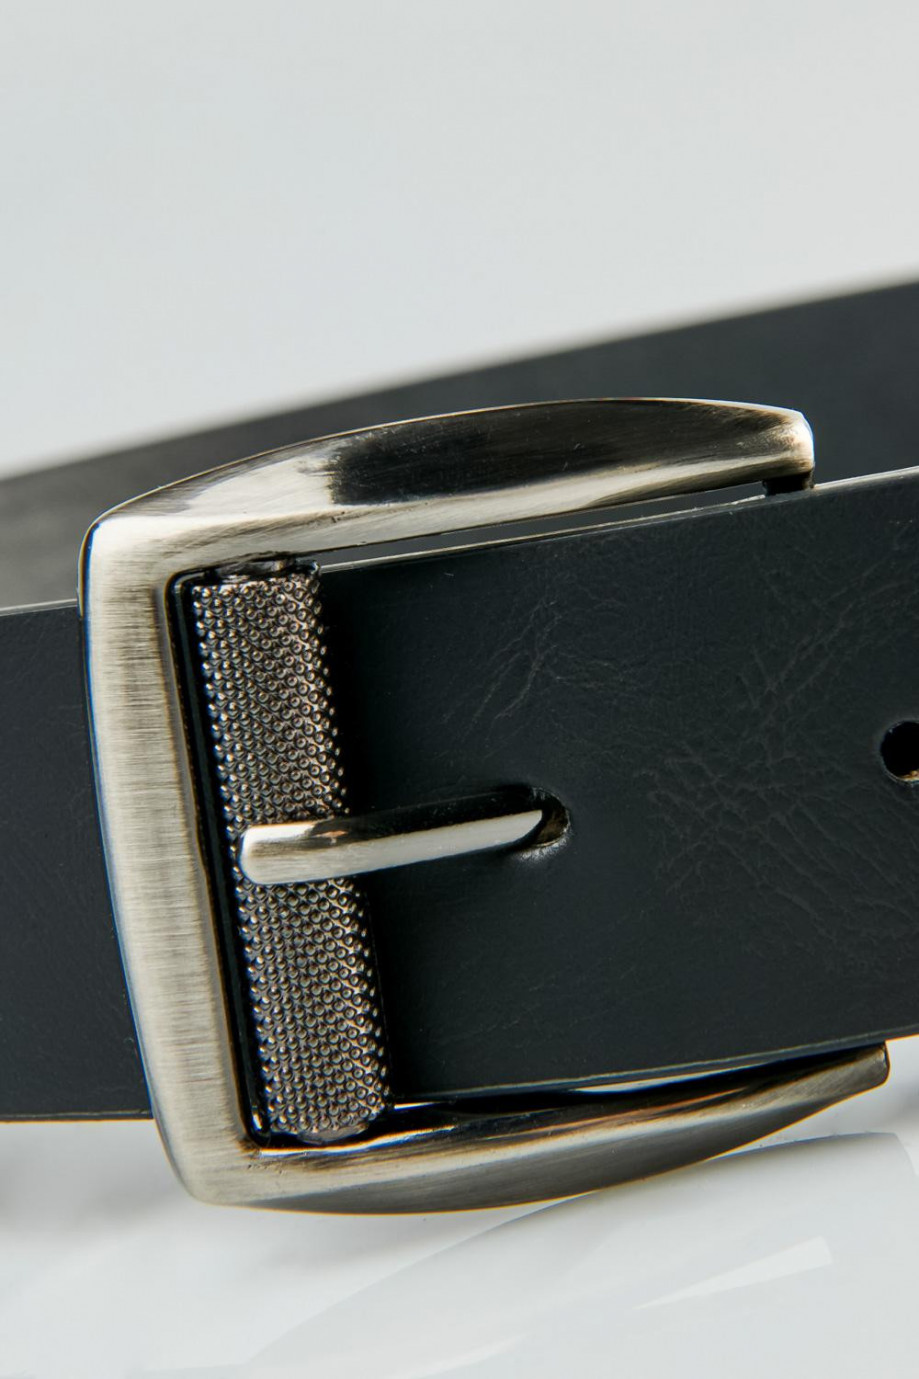 Cinturón negro sintético liso con hebilla cuadrada plateada